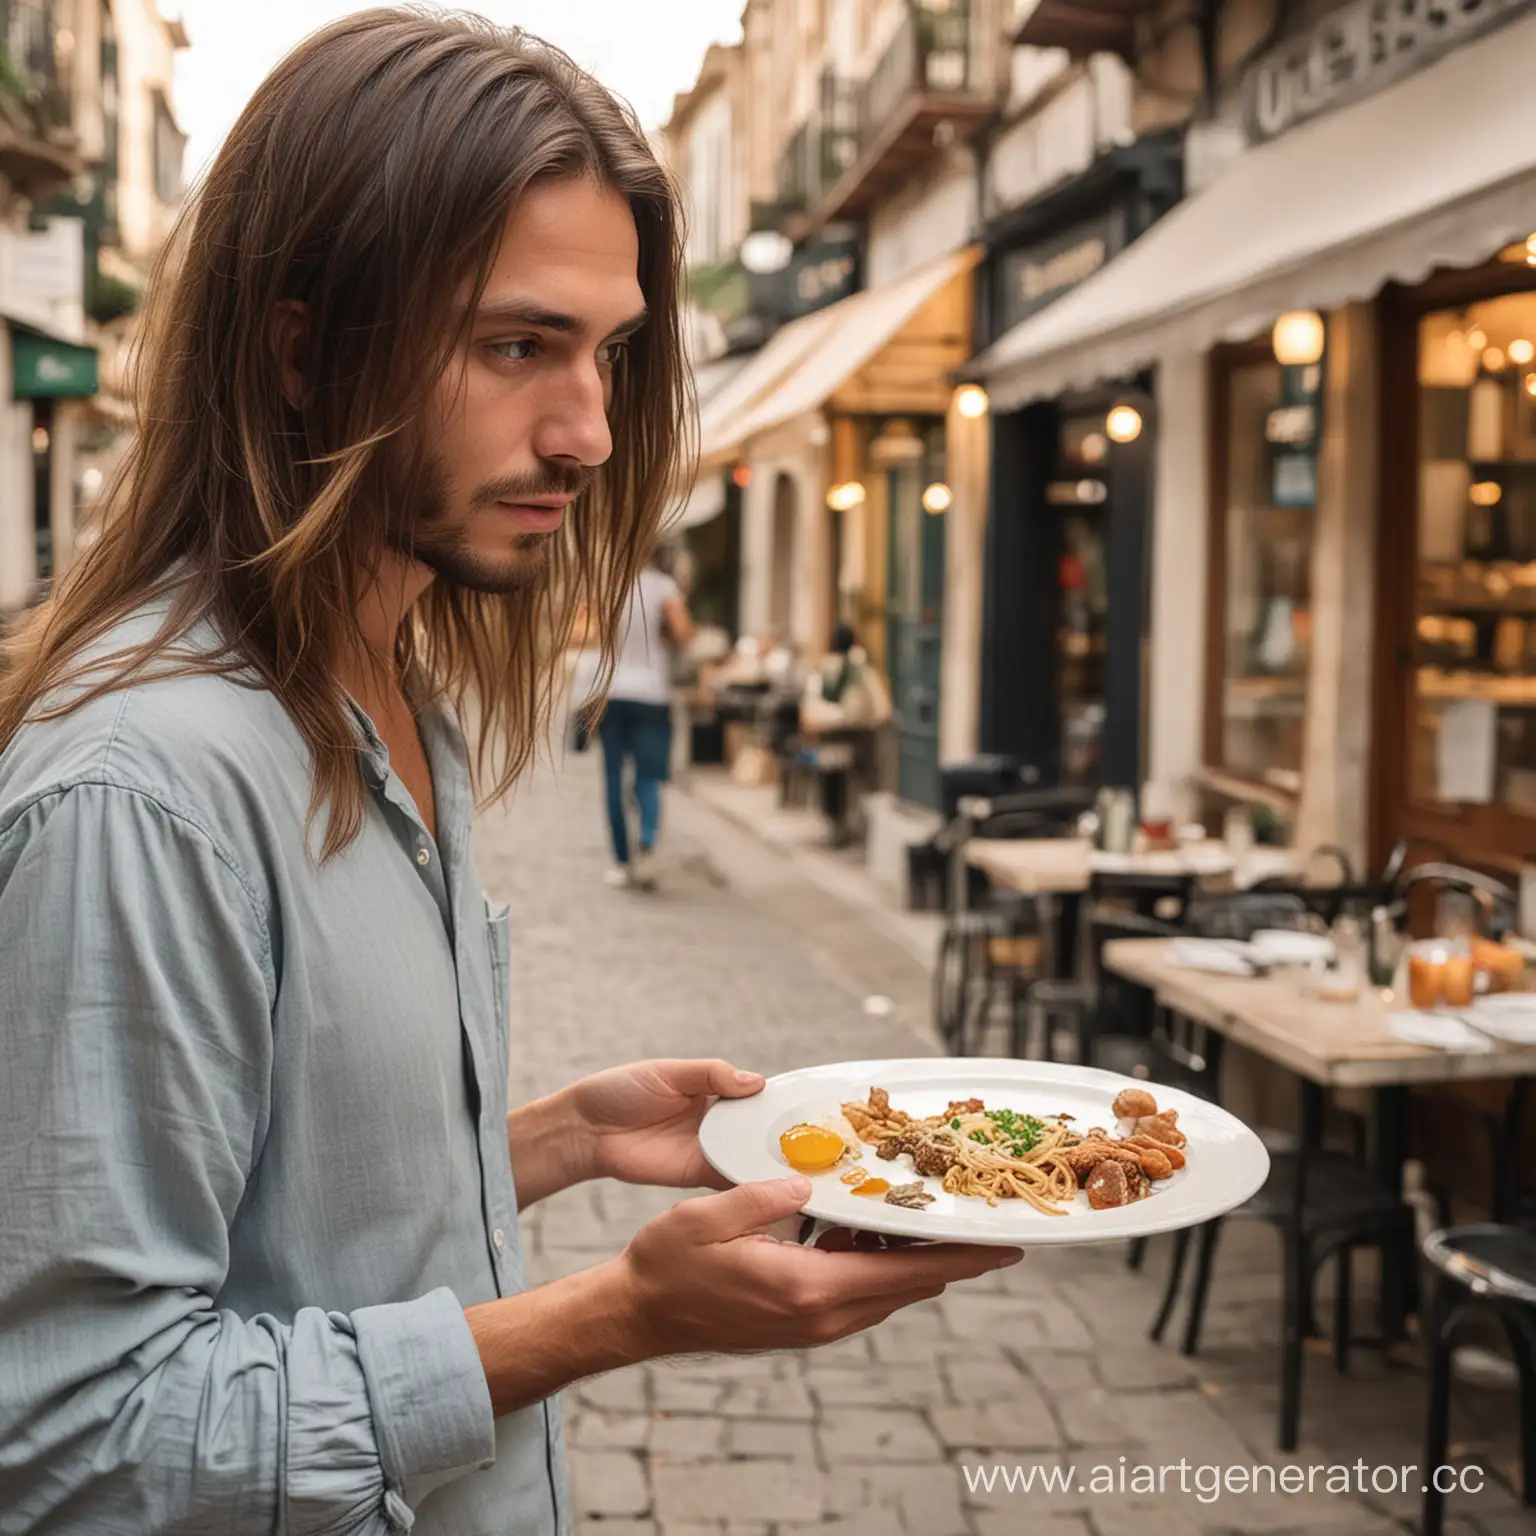 человек с тарелкой стоит, не знает, куда ему пойти, чтобы поесть, вокруг смотрят, ищет места, где покушать. у него длинные волосы
